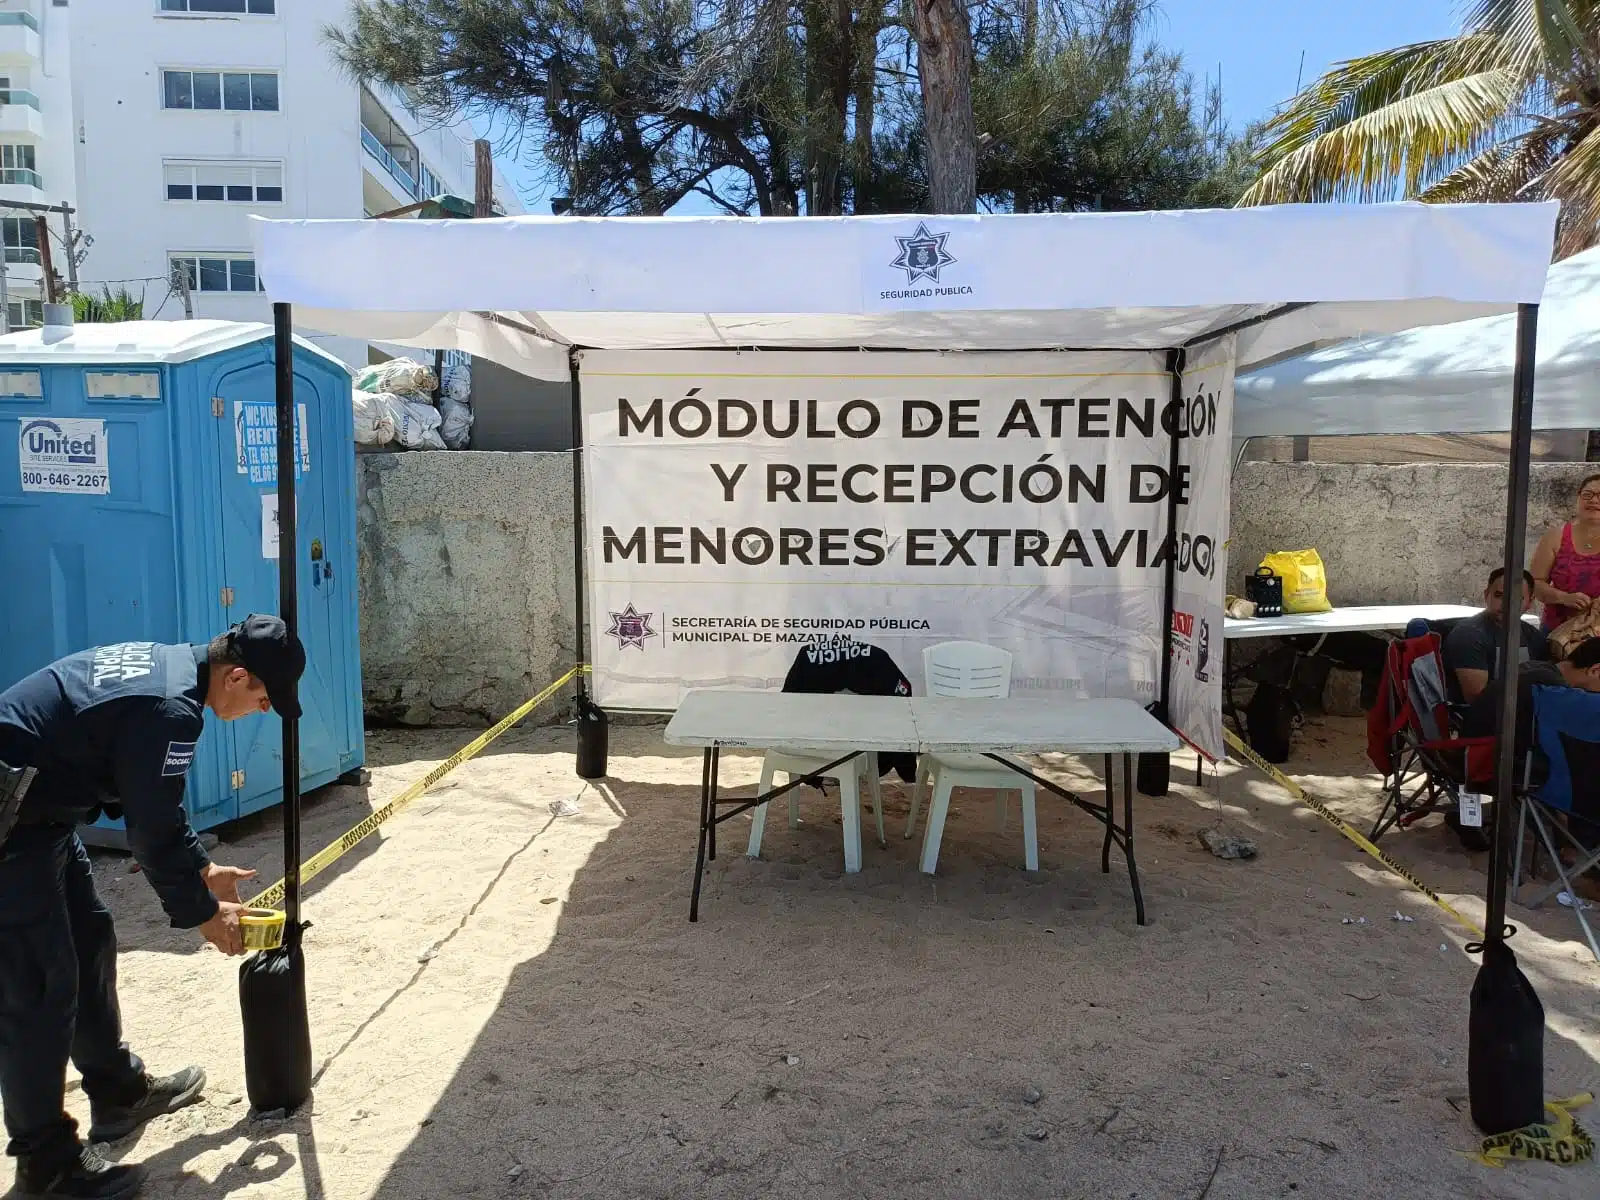 Módulos de atención y recepción de menores extraviados en Mazatlán